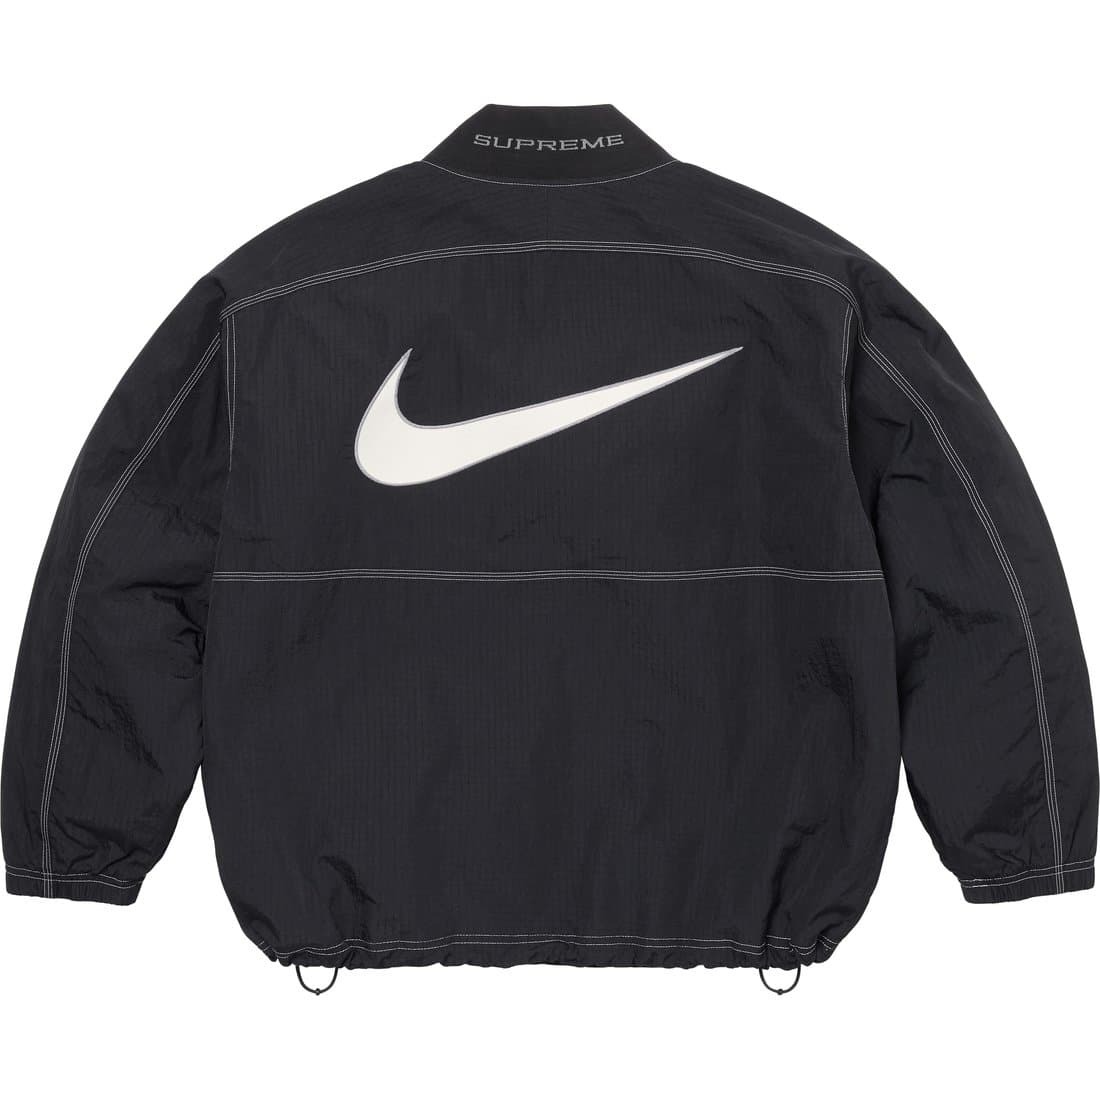 送料無料! XLサイズ Supreme Nike Ripstop Pullover Black 黒 ブラック シュプリーム ナイキ リップストップ プルオーバー ジャケット